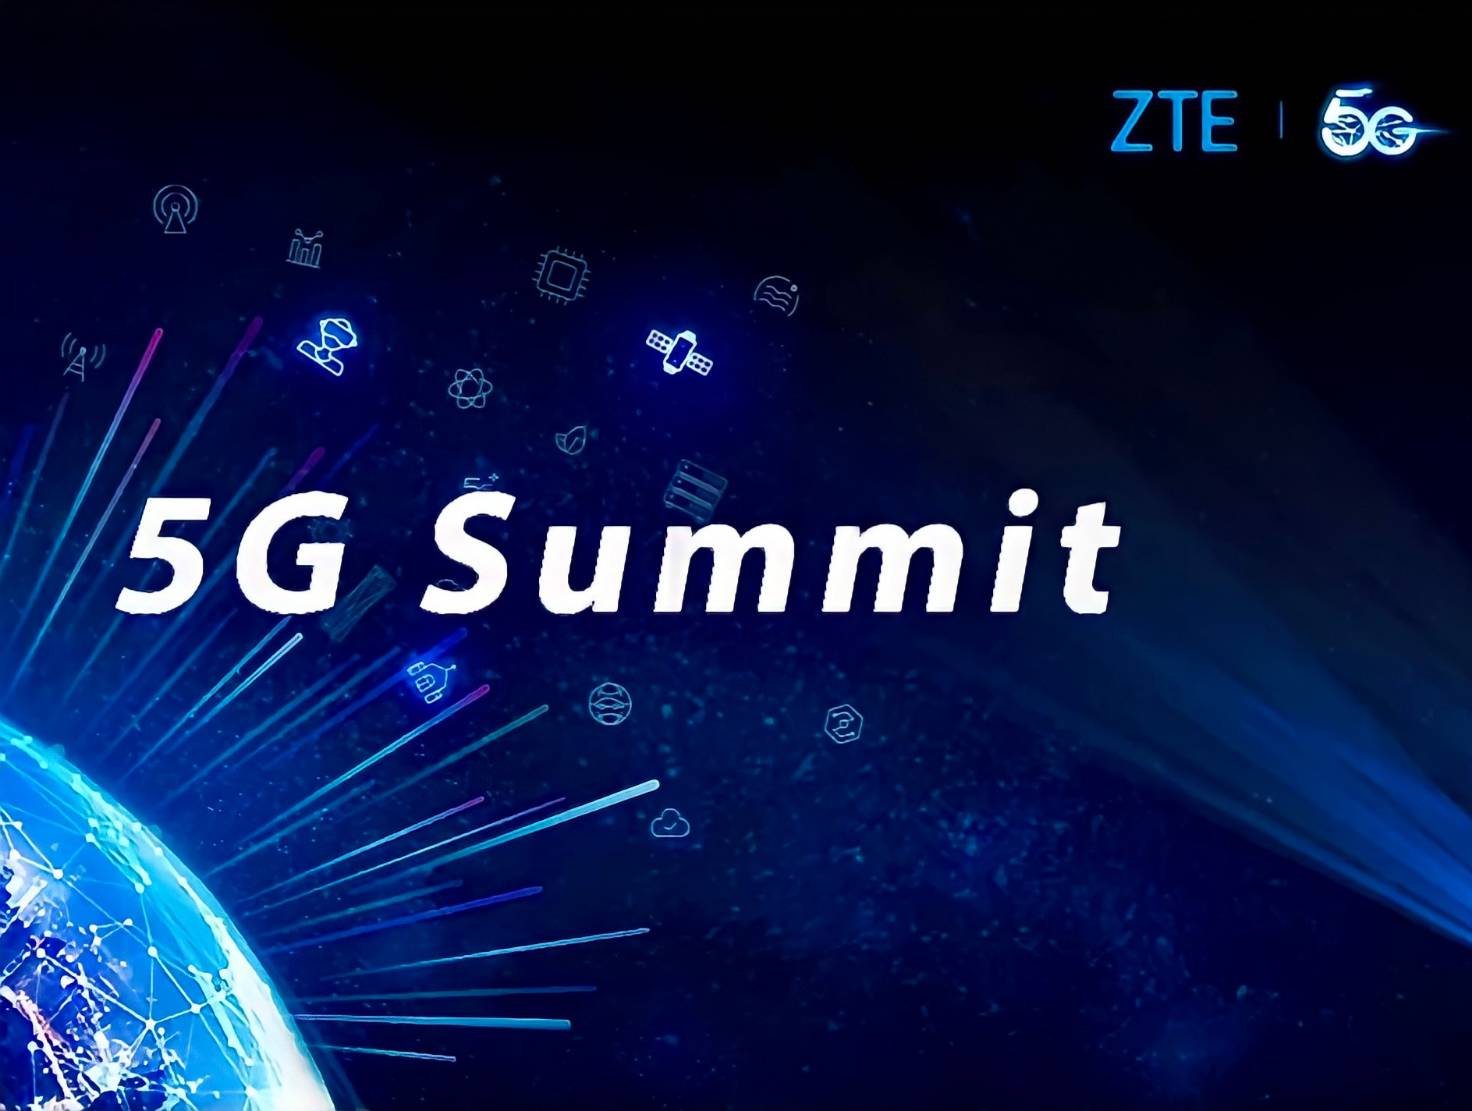 ZTE จัดการประชุมออนไลน์ 5G Summit 2021  ปูทางสร้างสู่ระบบนิเวศดิจิทัล